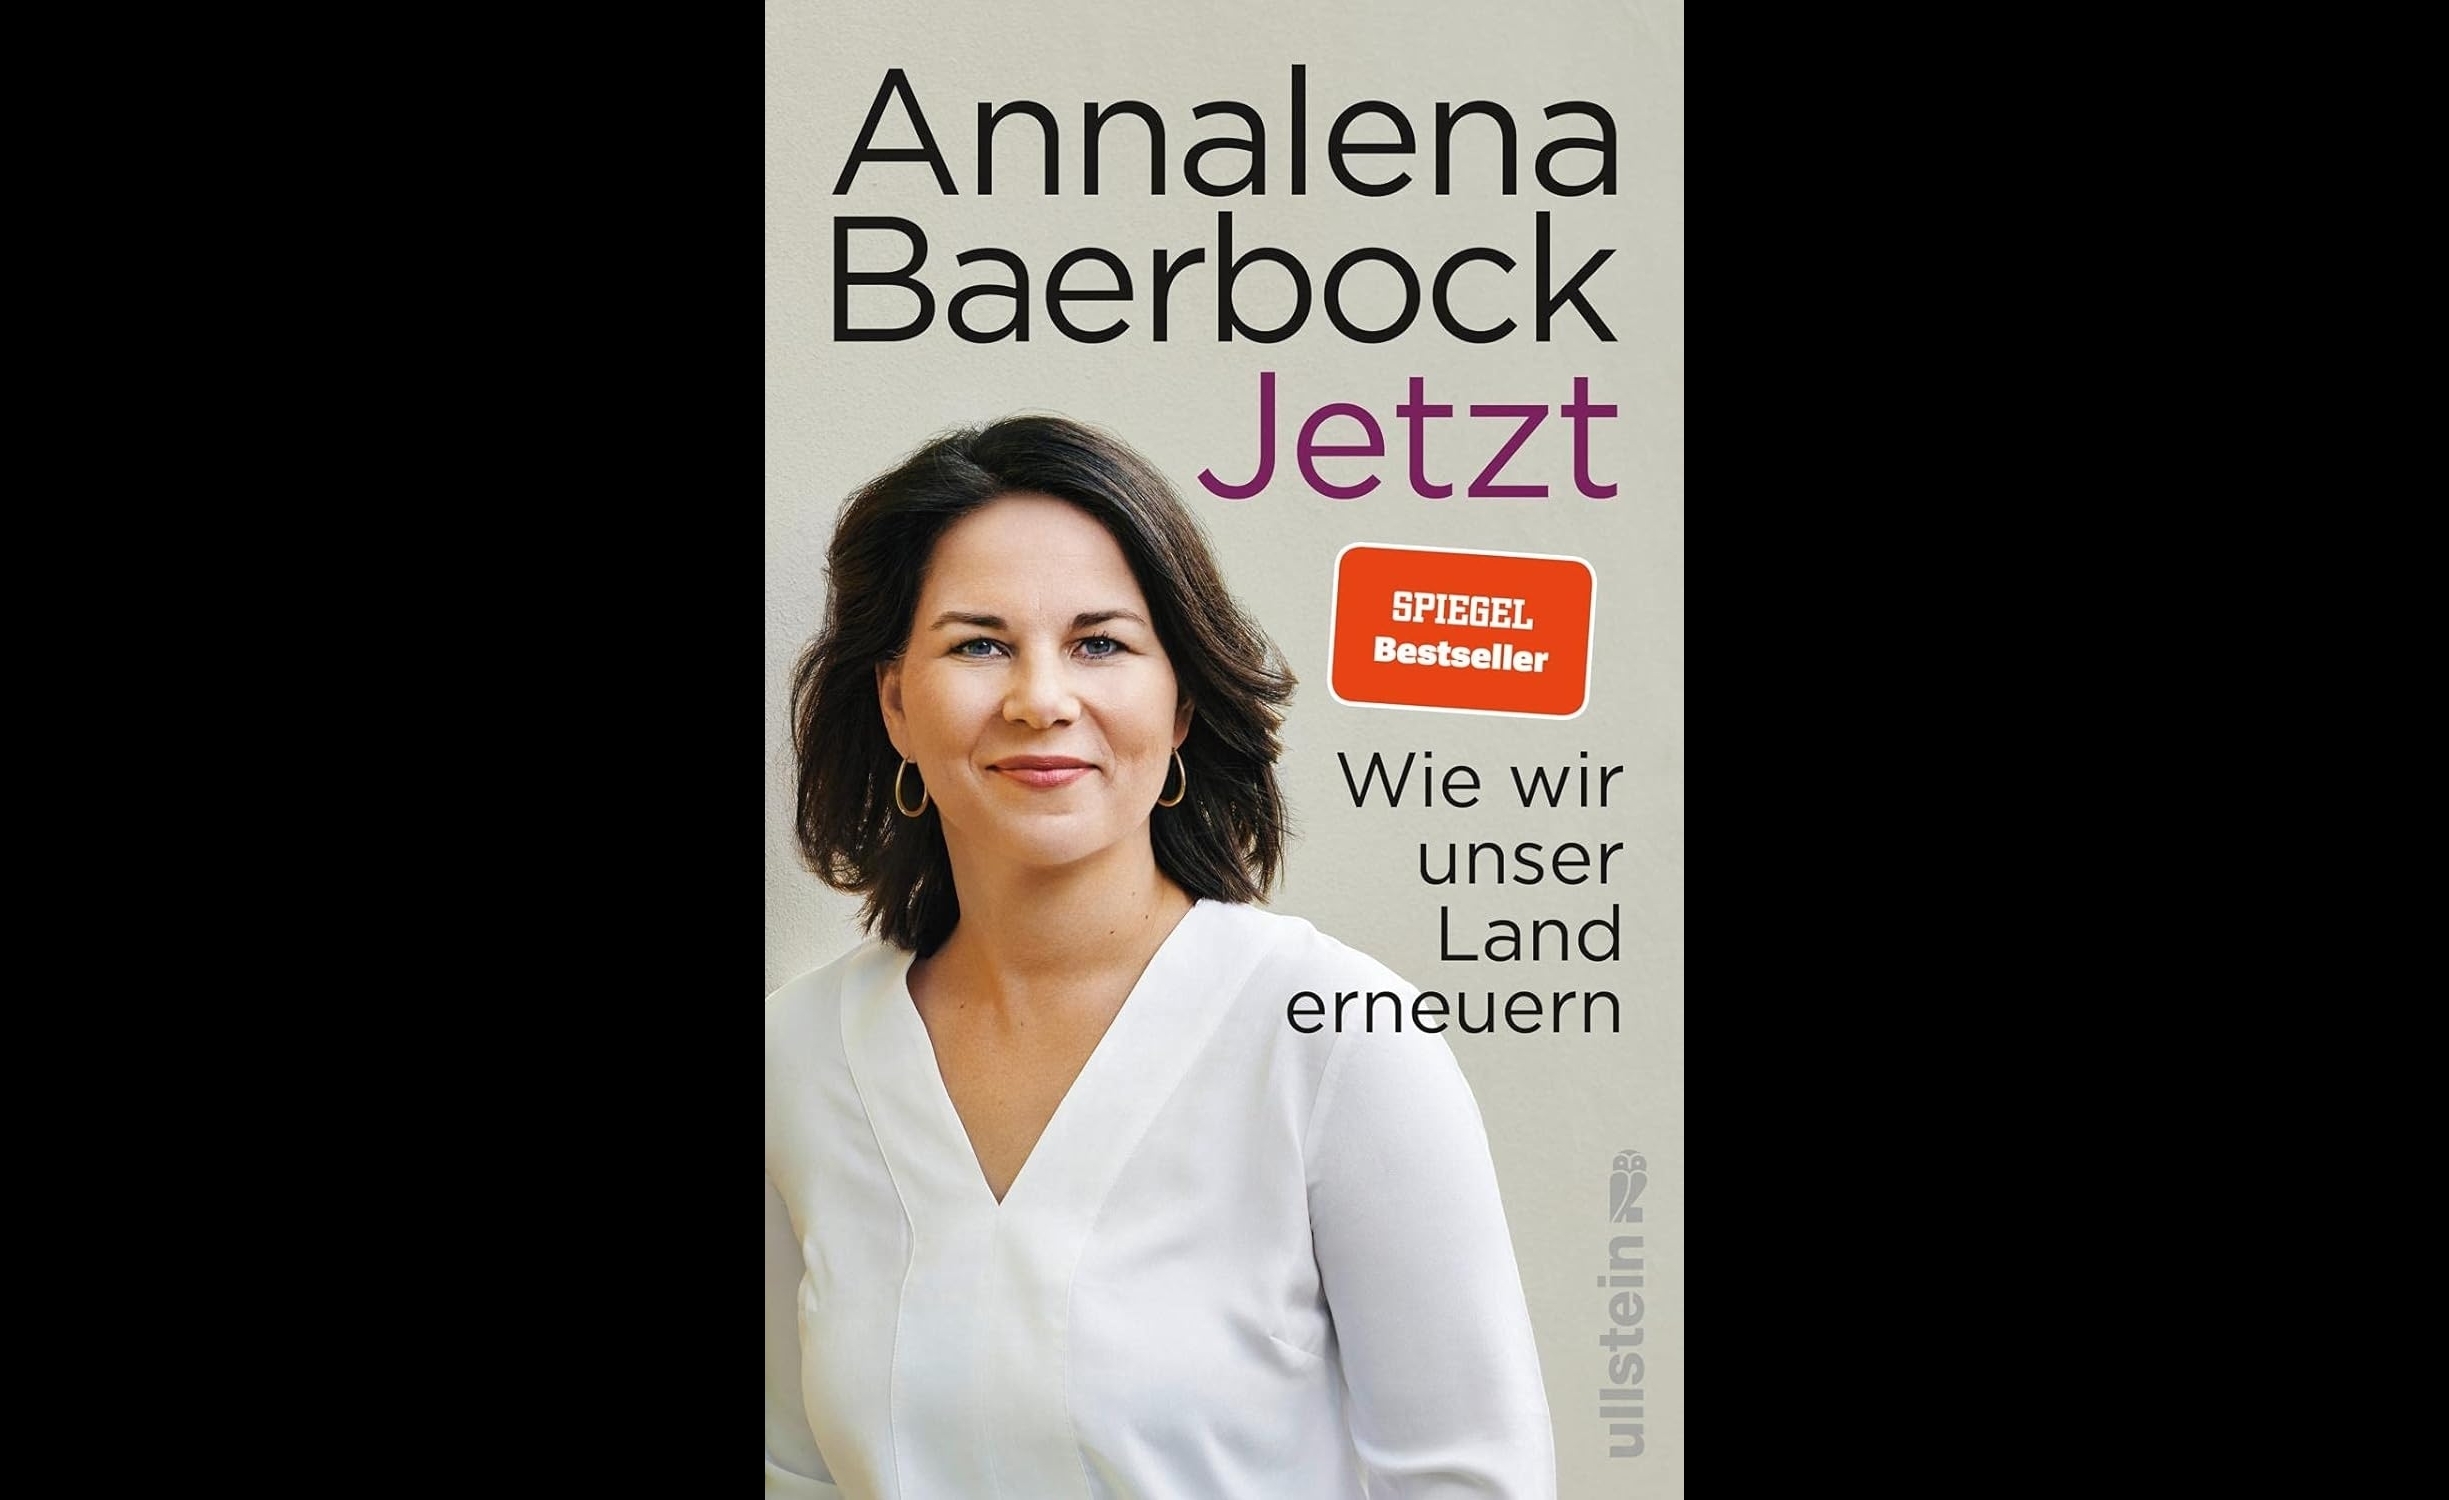 아날레나 베어보크 독일 외무장관은 2021년 총선 직전 출간한 책 ‘지금: 국가를 새롭게 하는 방법’(Jetzt: Wie wir unser Land erneuern·2021년 6월) 표절 논란으로 한 차례 홍역을 치렀다.